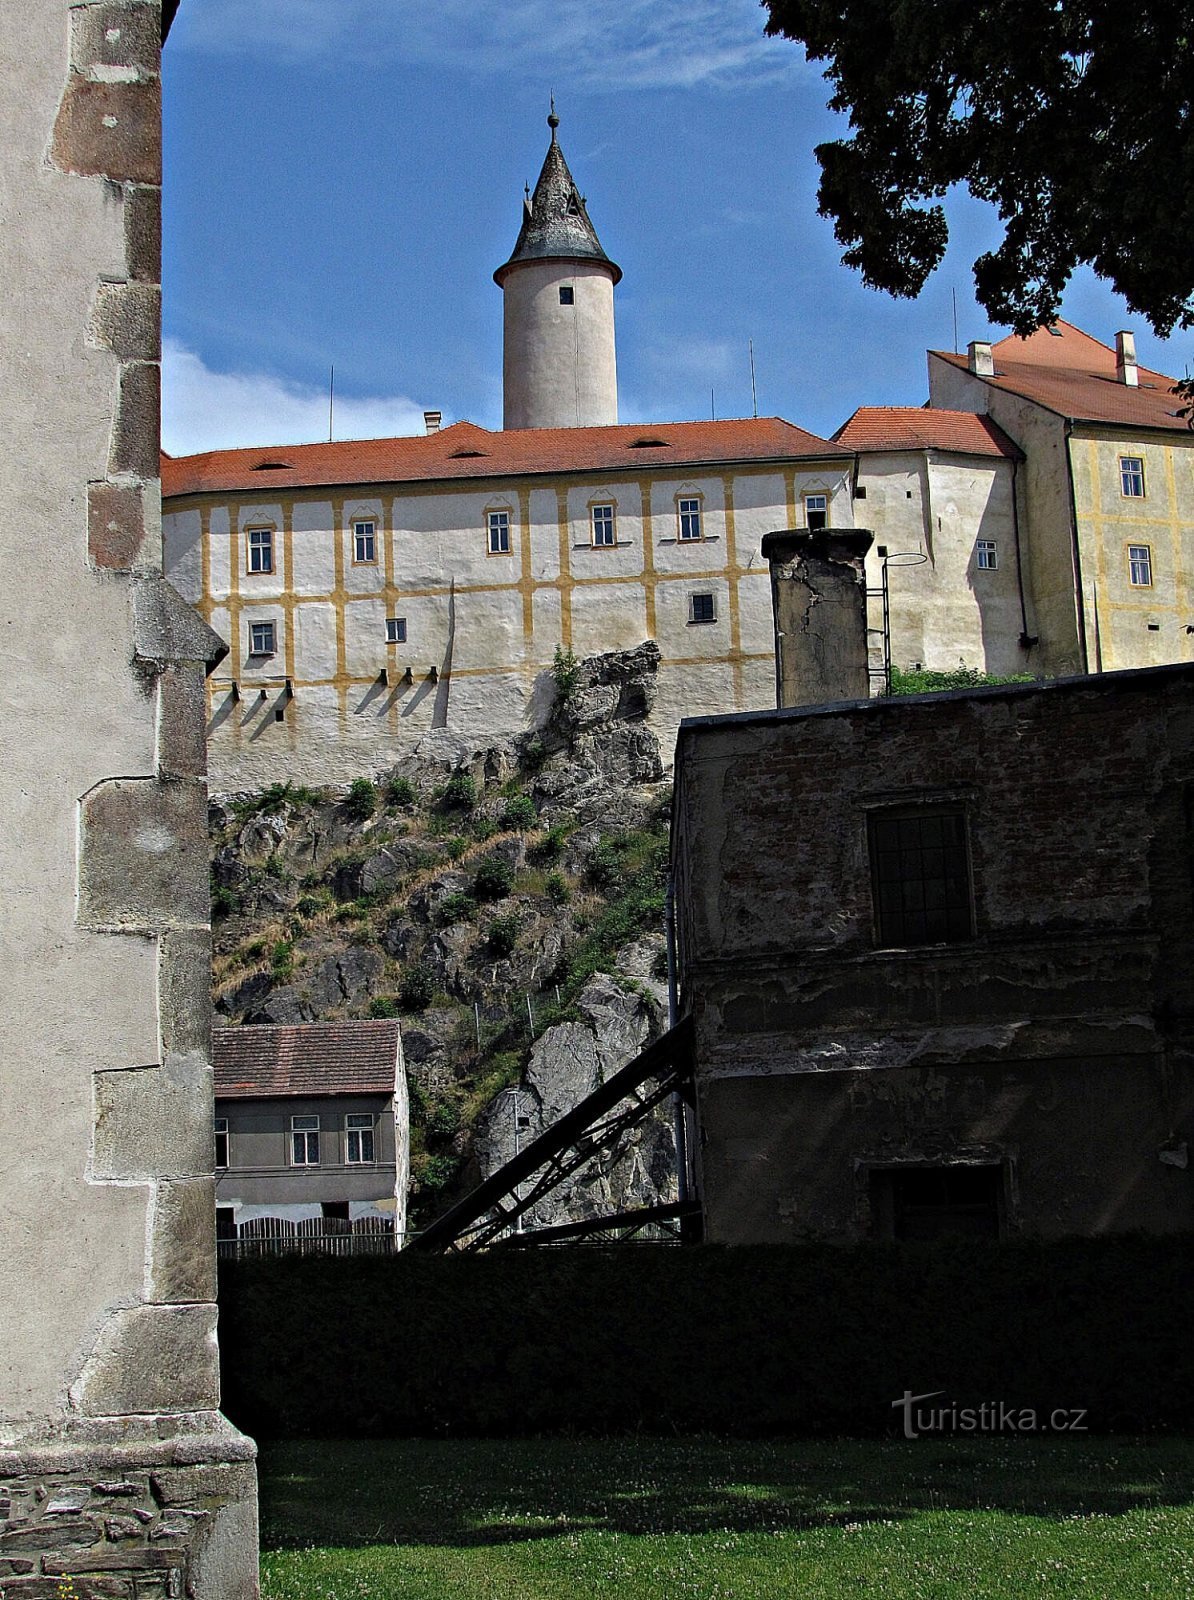 Khuôn viên của lâu đài ở Ledč nad Sázavou